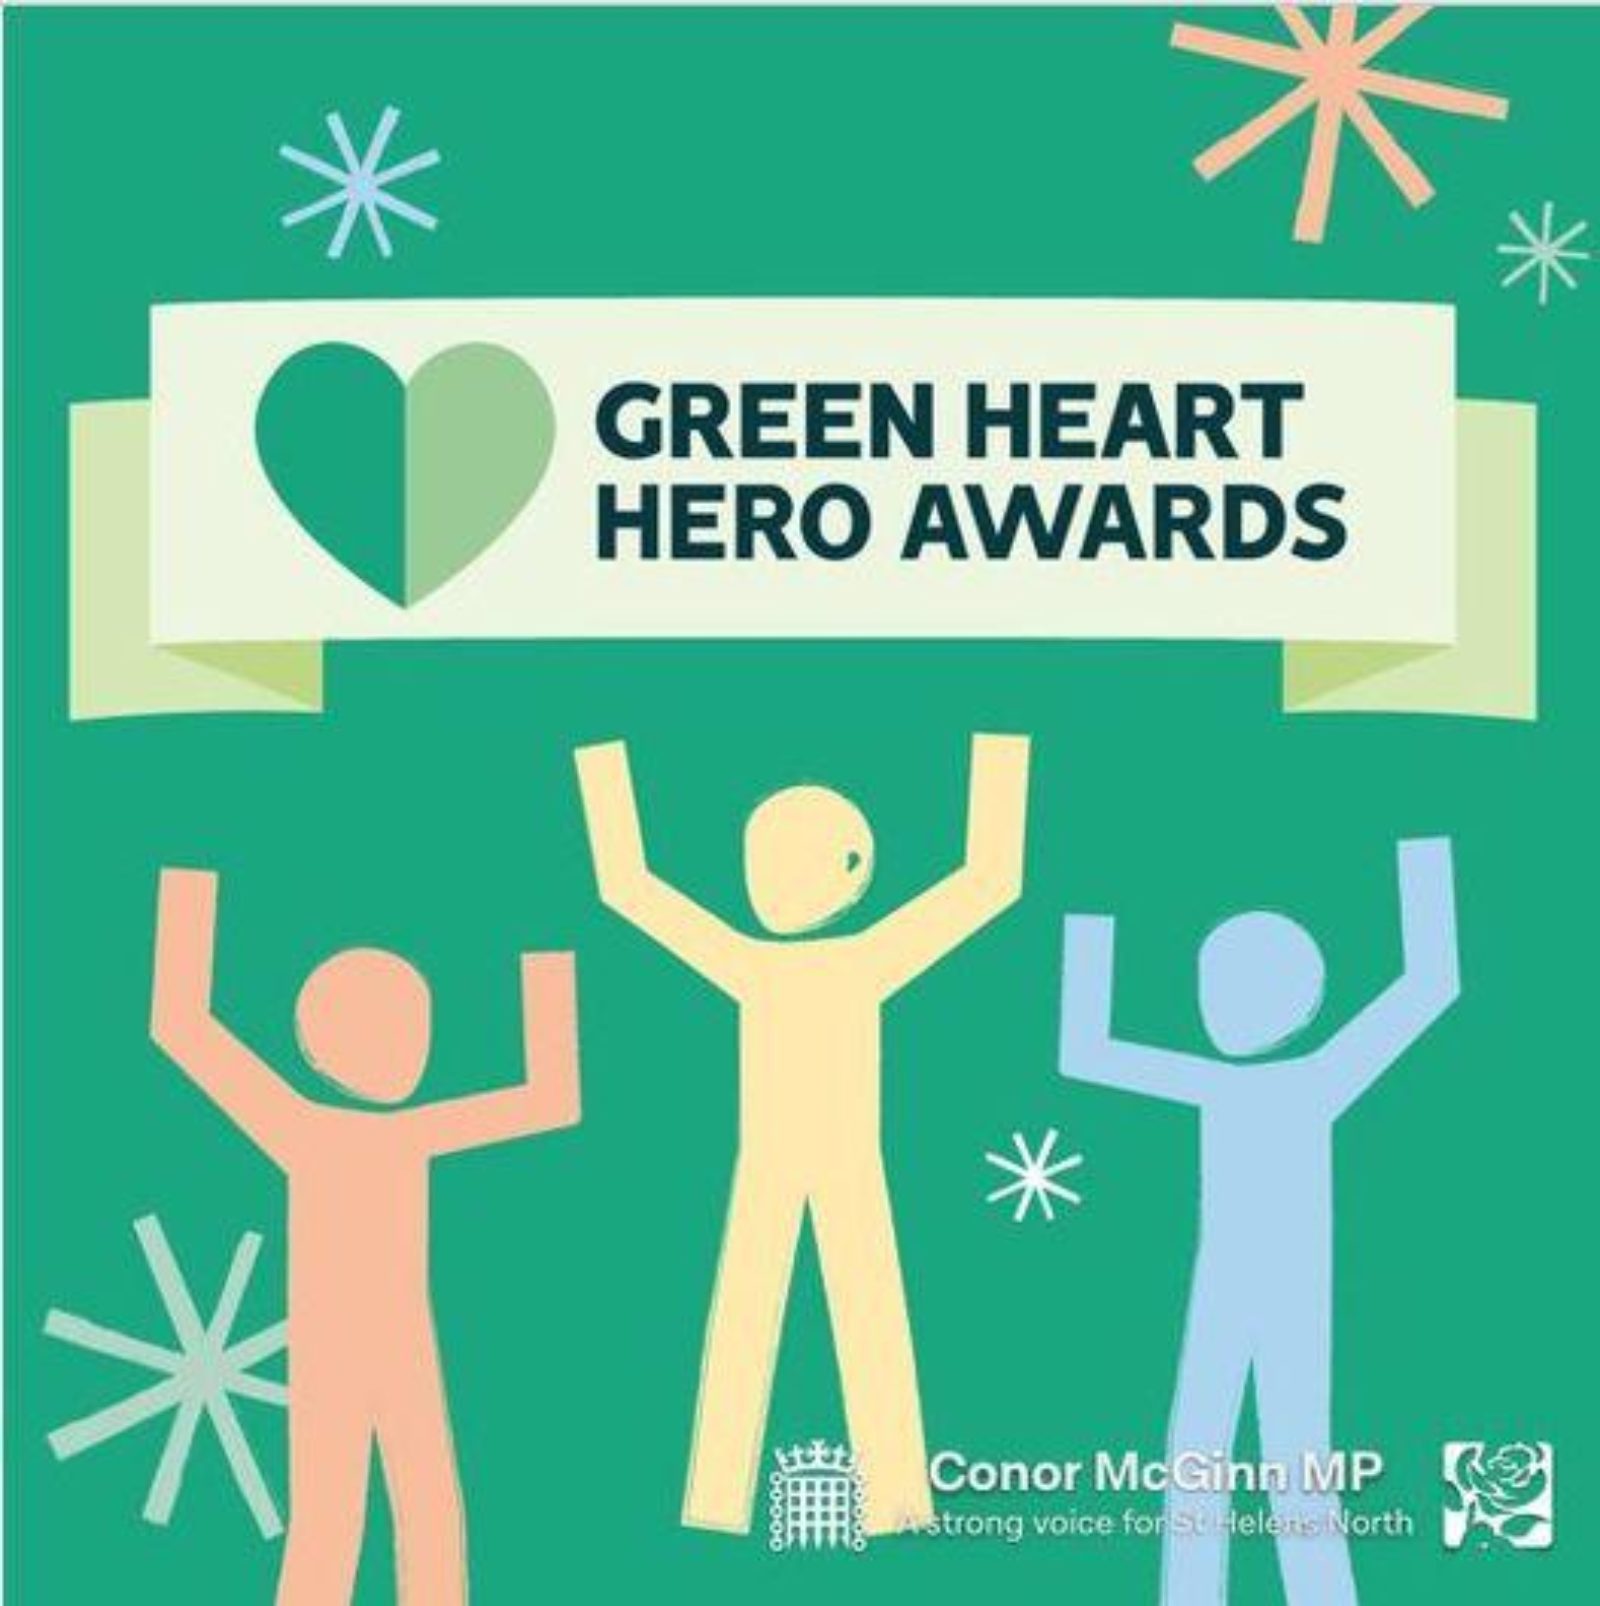 Green heart hero awards